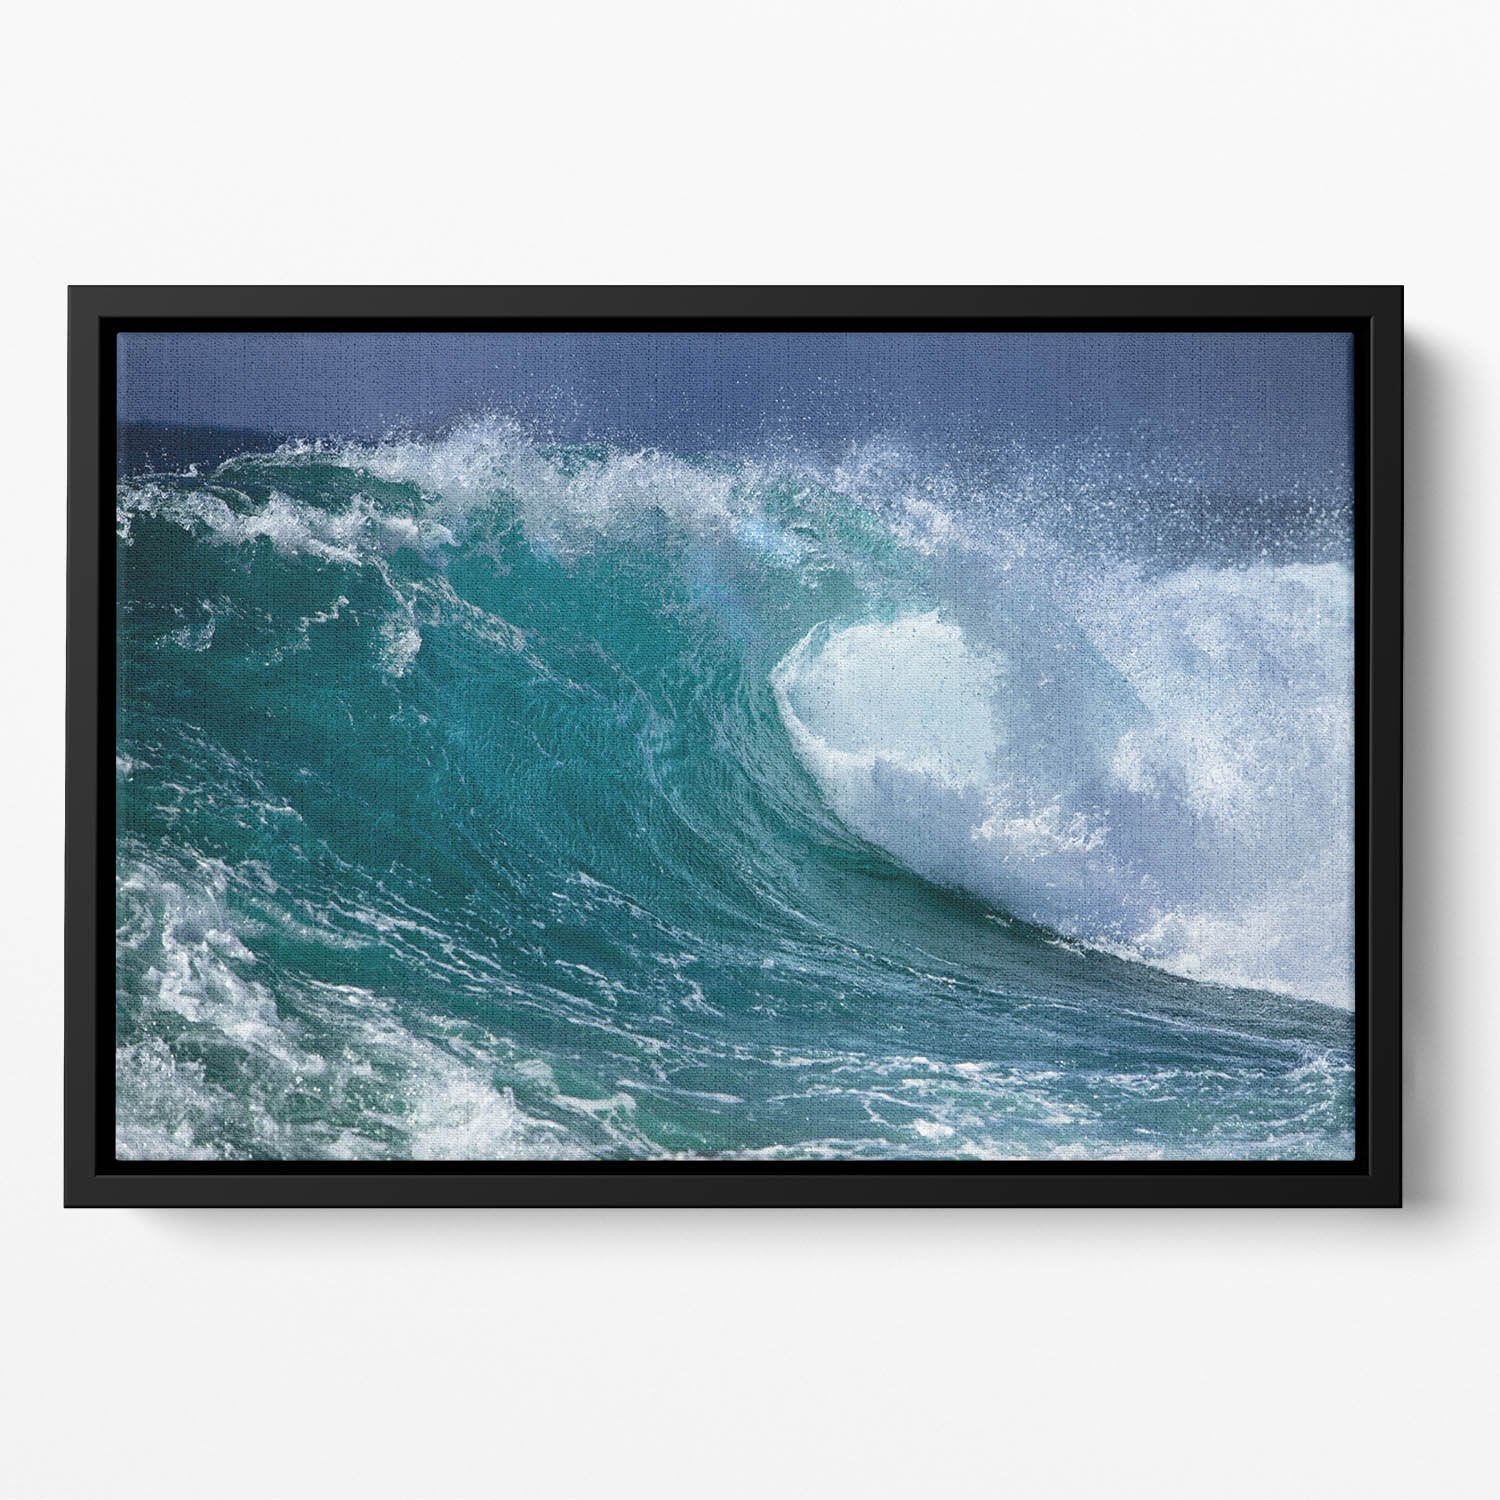 Ocean wave Floating Framed Canvas